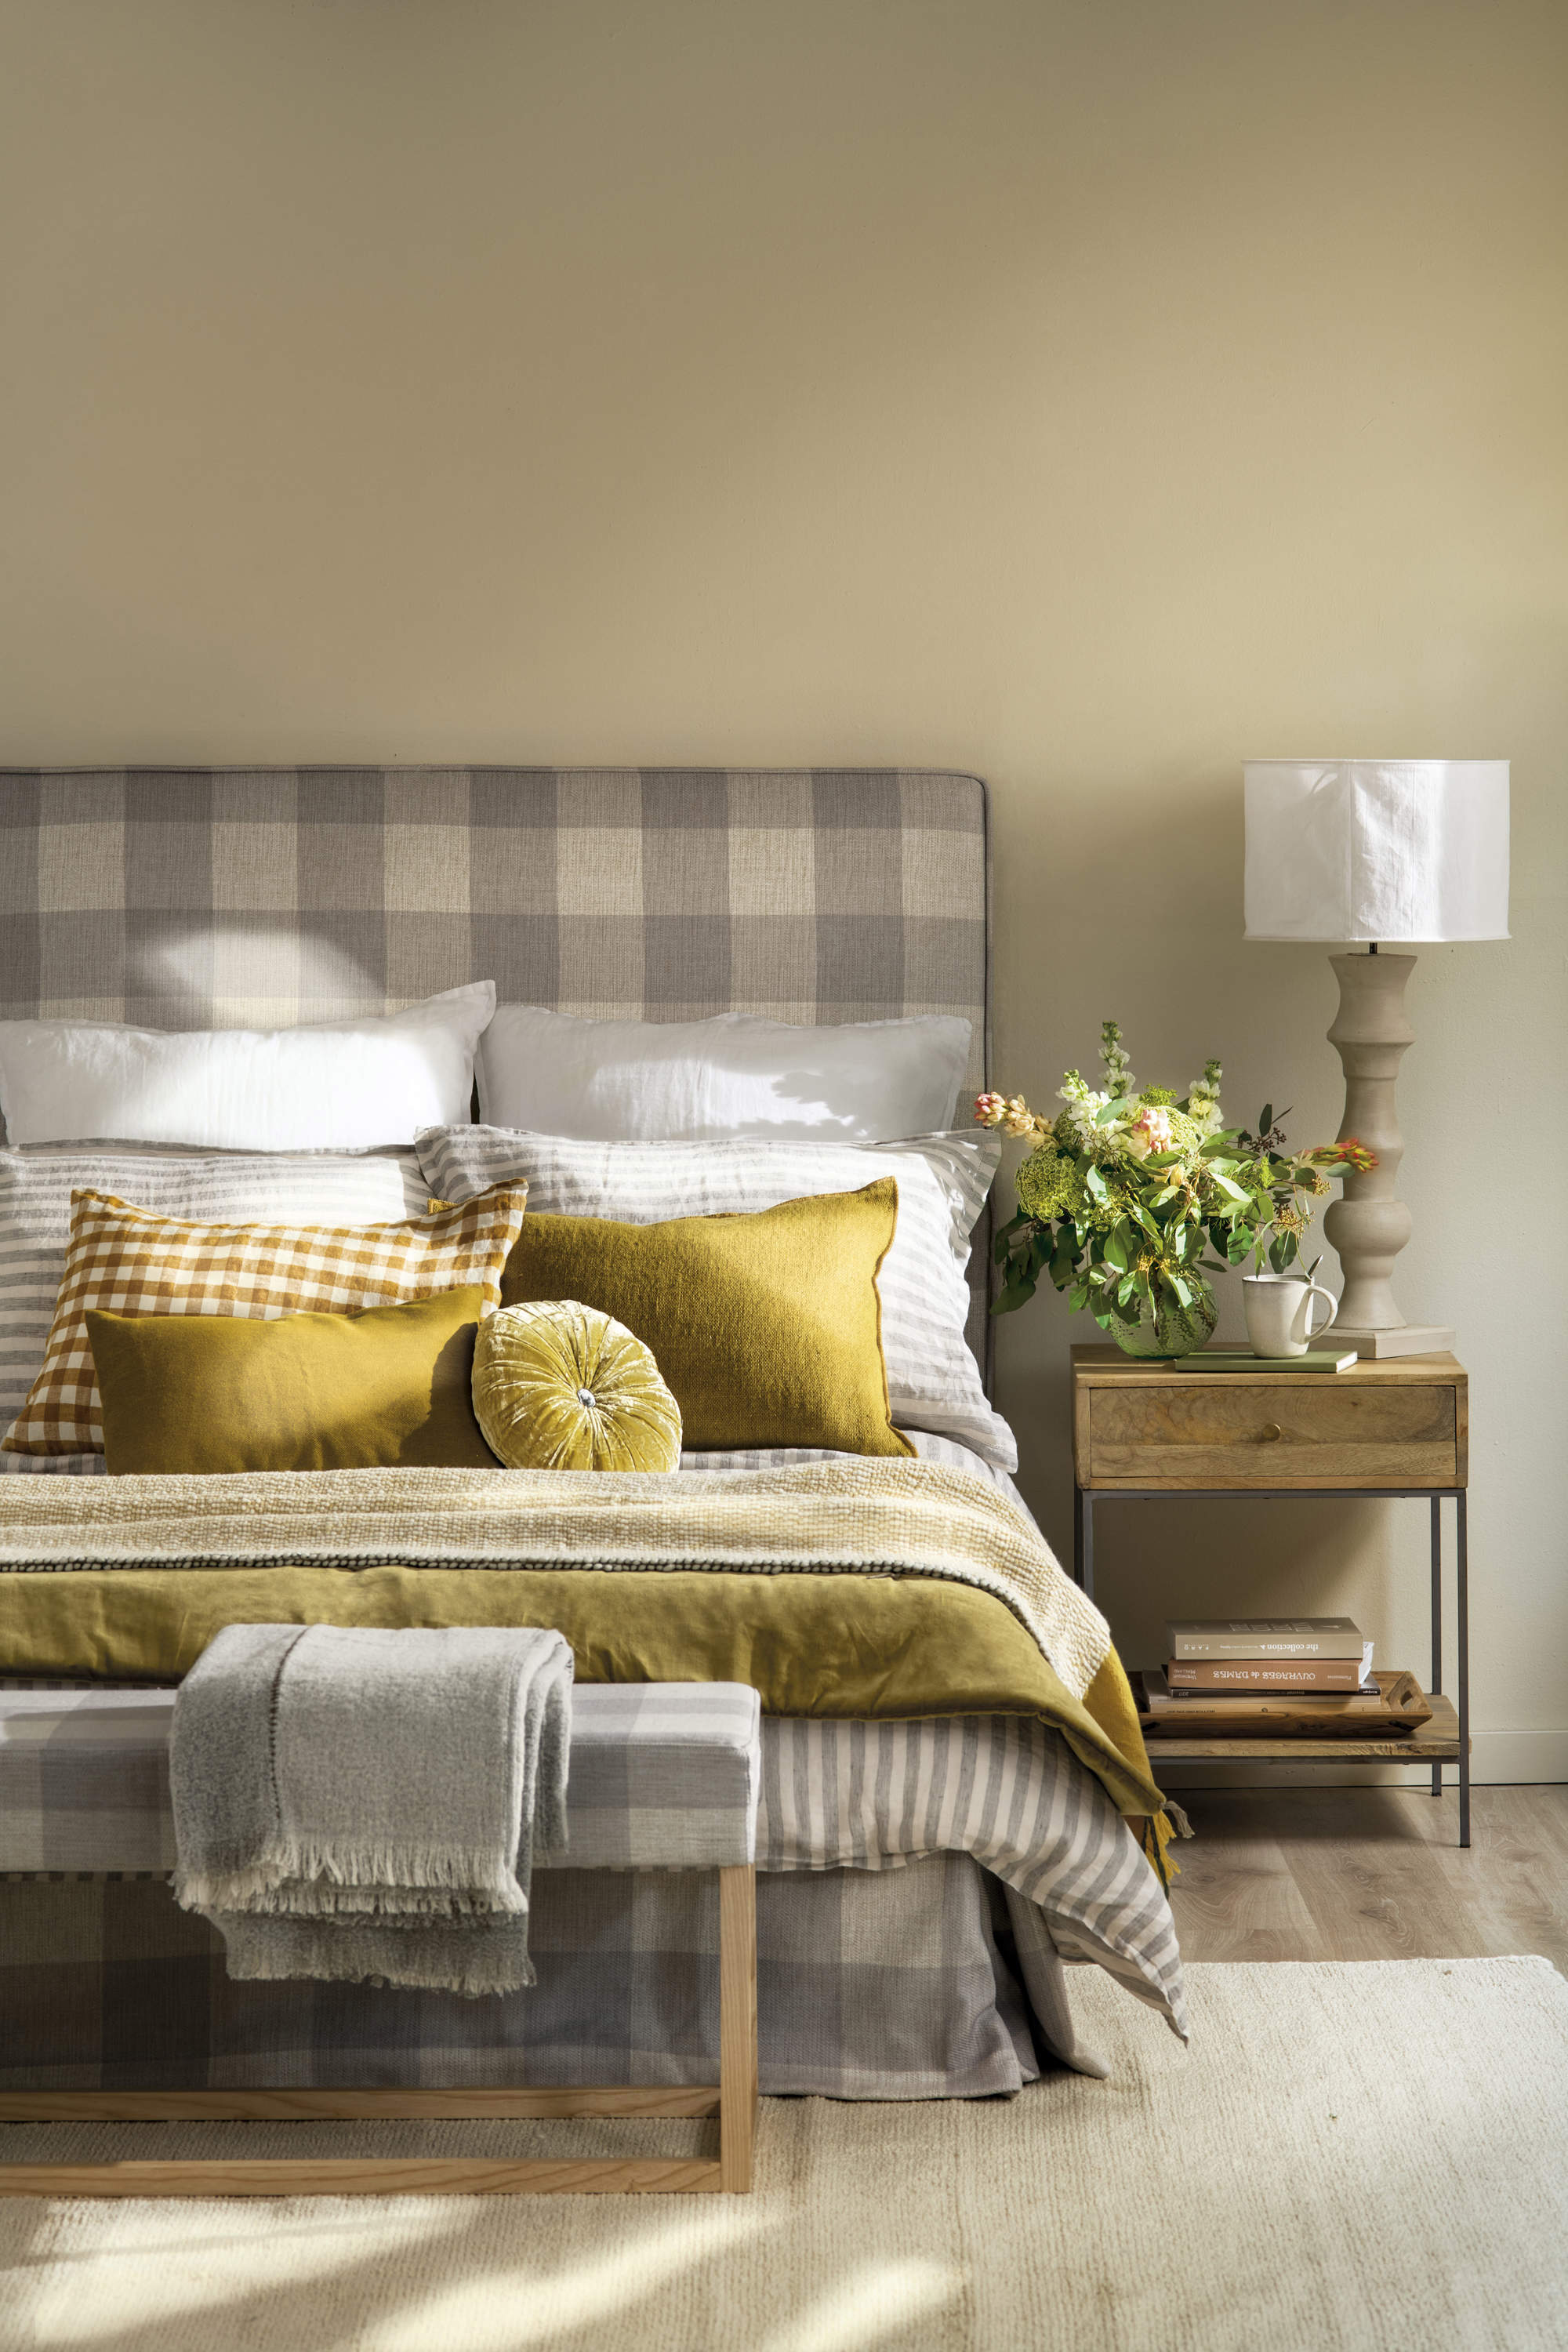 Dormitorio beige con cabecero tapizado en estampado de cuadros gris y blanco